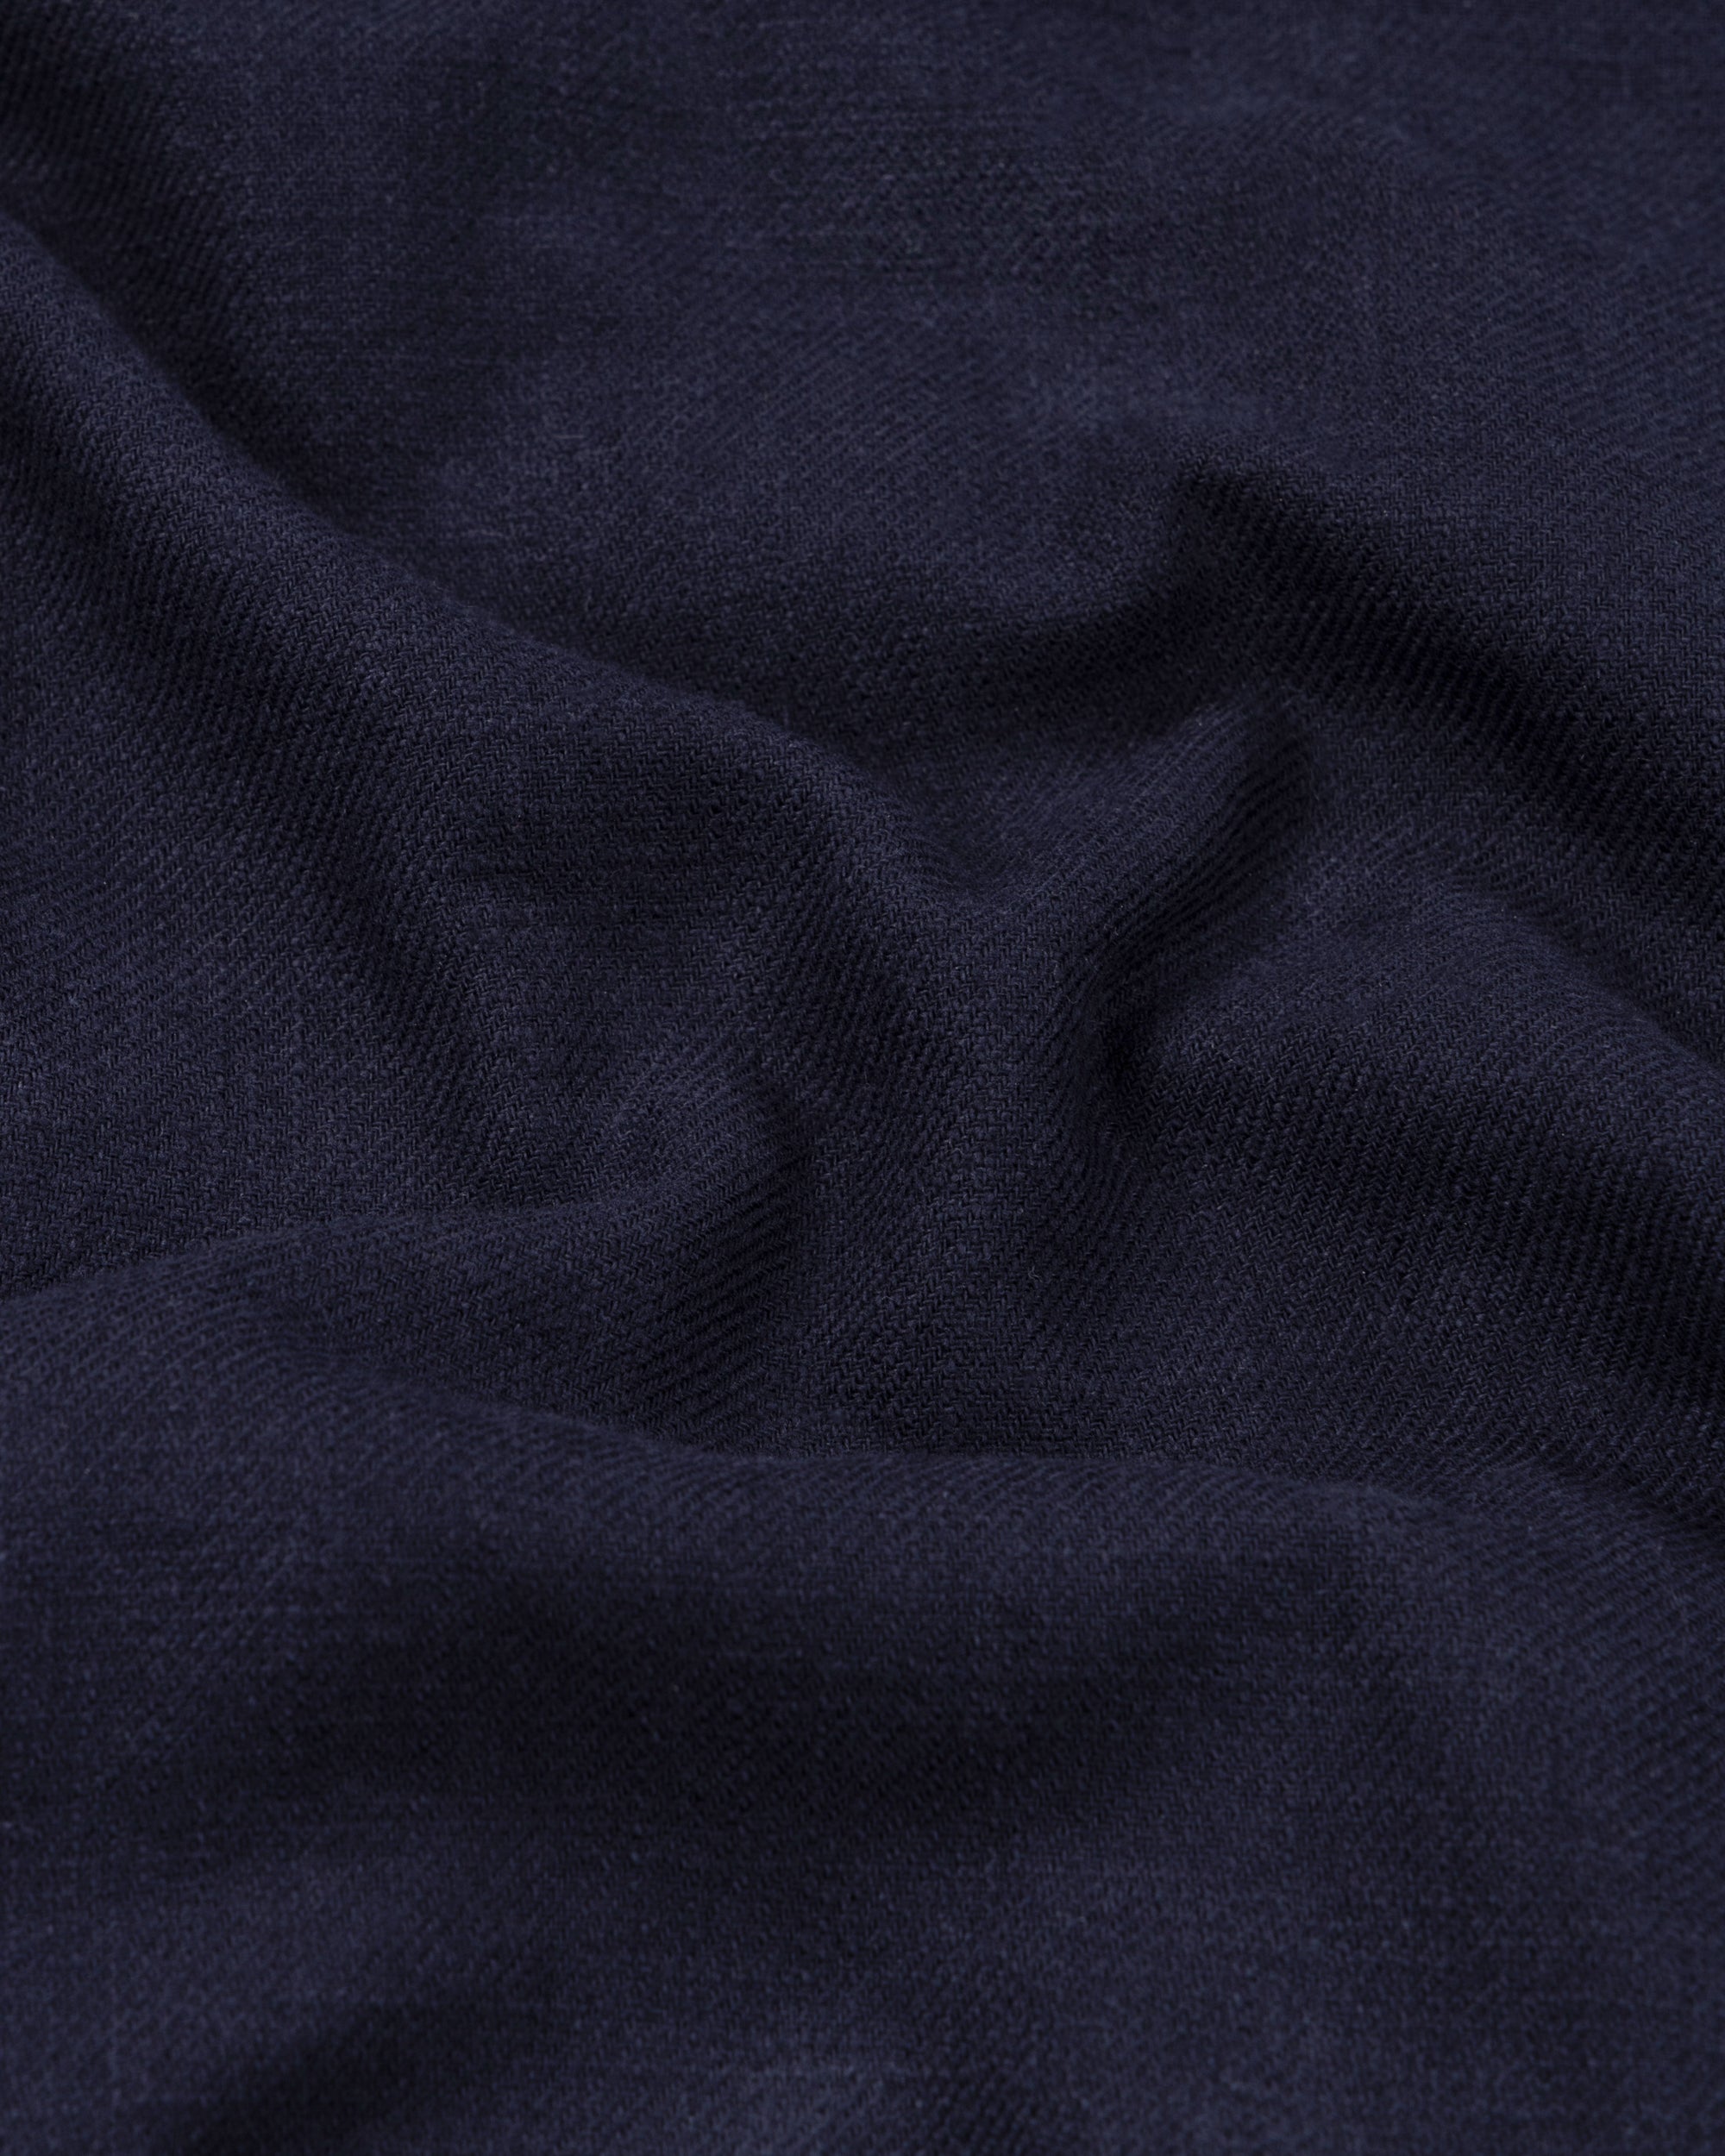 Overshirt - Navy Washed Cotton